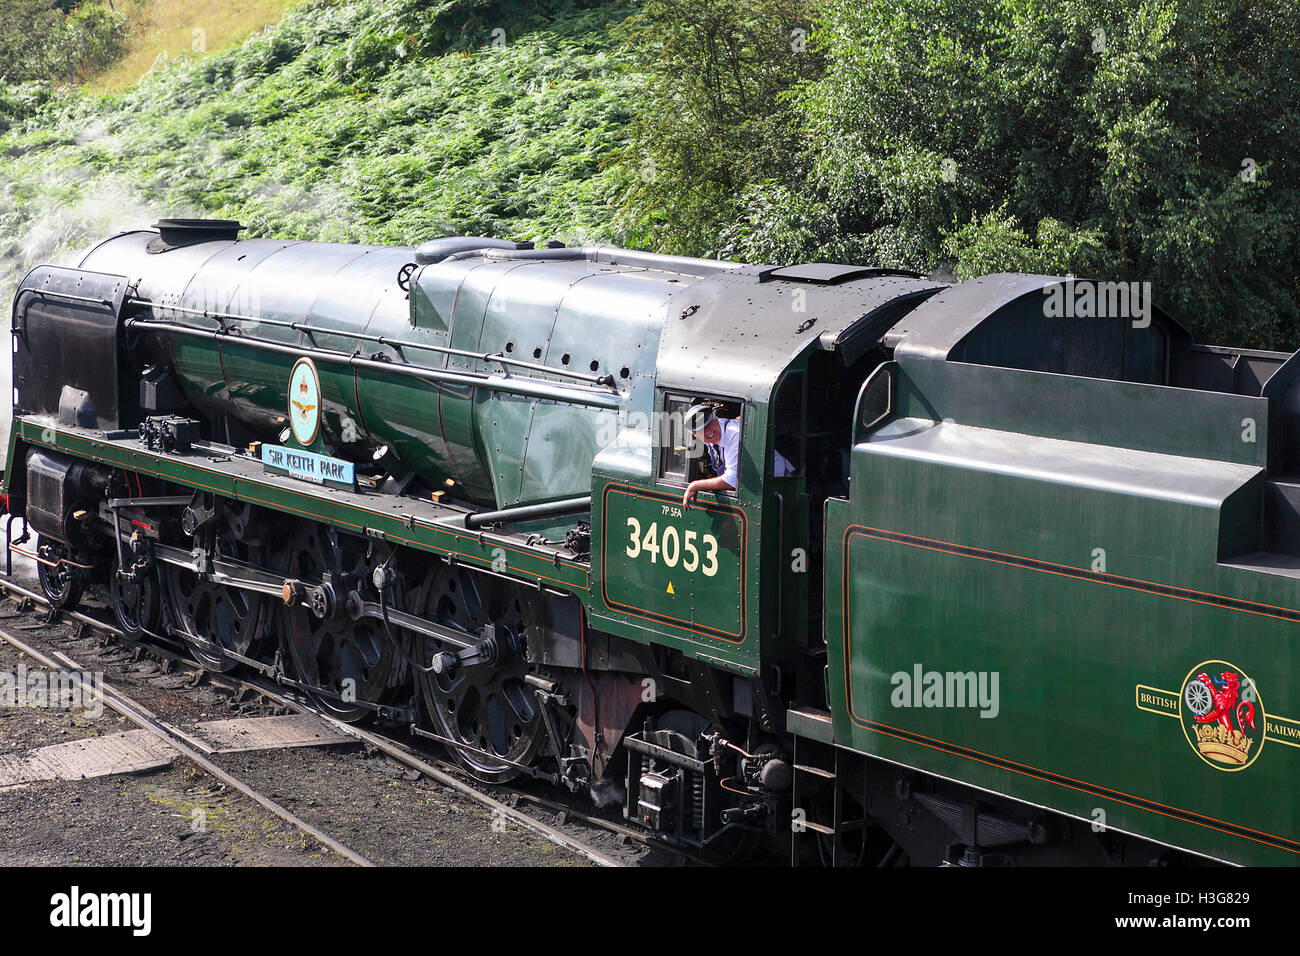 Sir Keith Park locomotore inversione di marcia Severn Valley Railway a Bridgnorth. Foto Stock